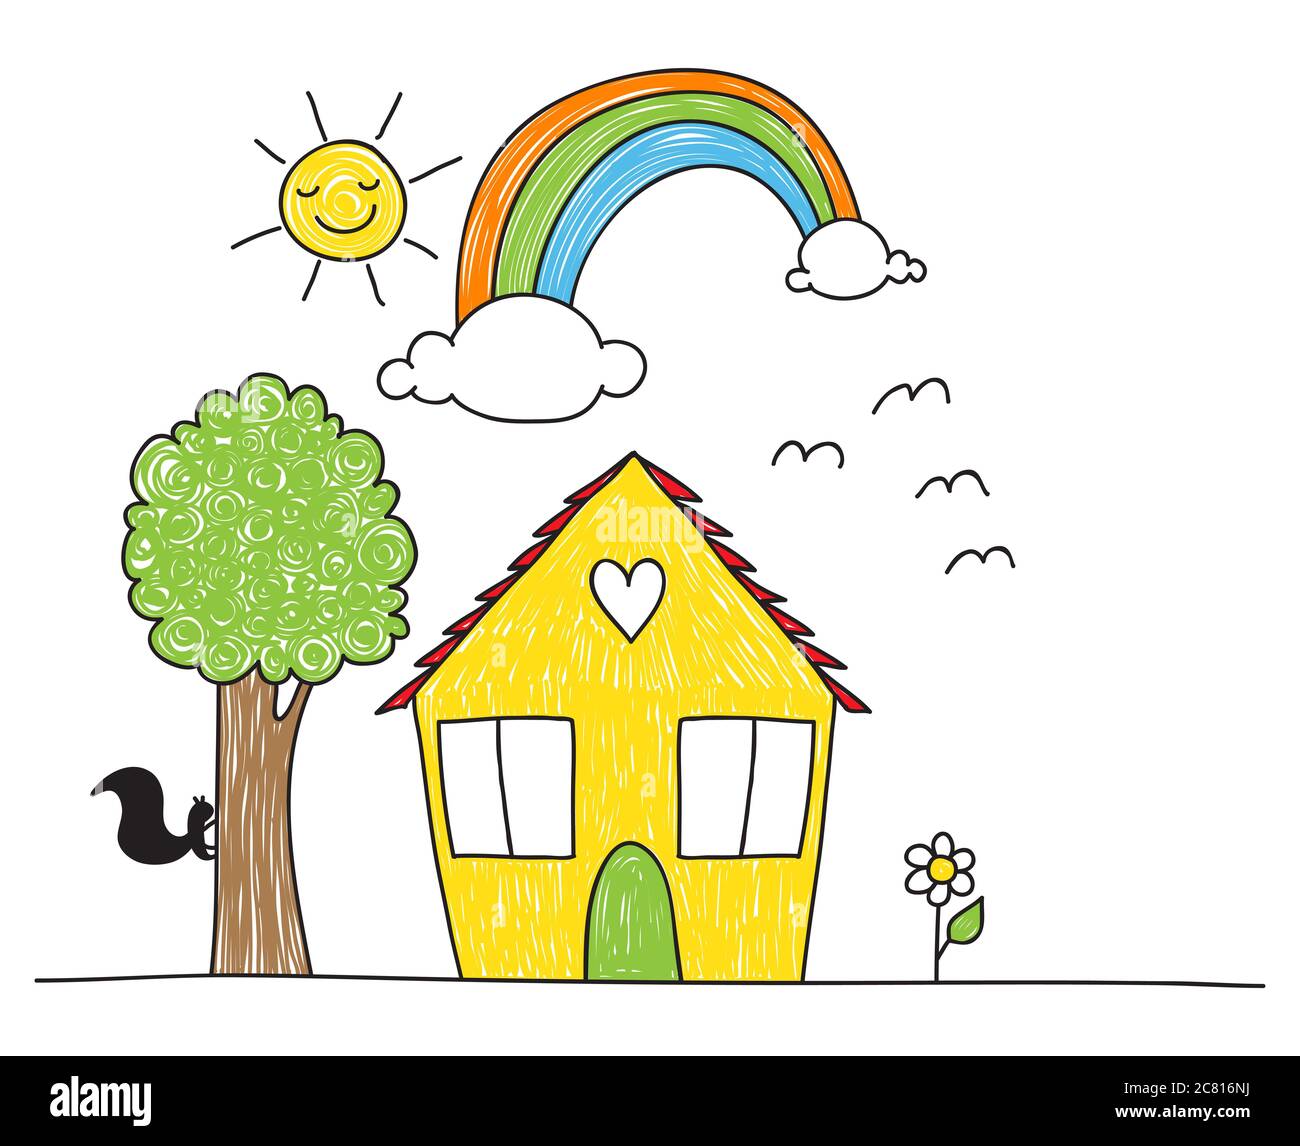 Linda casa de estilo de dibujo para niños, árboles, flores, arco iris y el  sol Fotografía de stock - Alamy